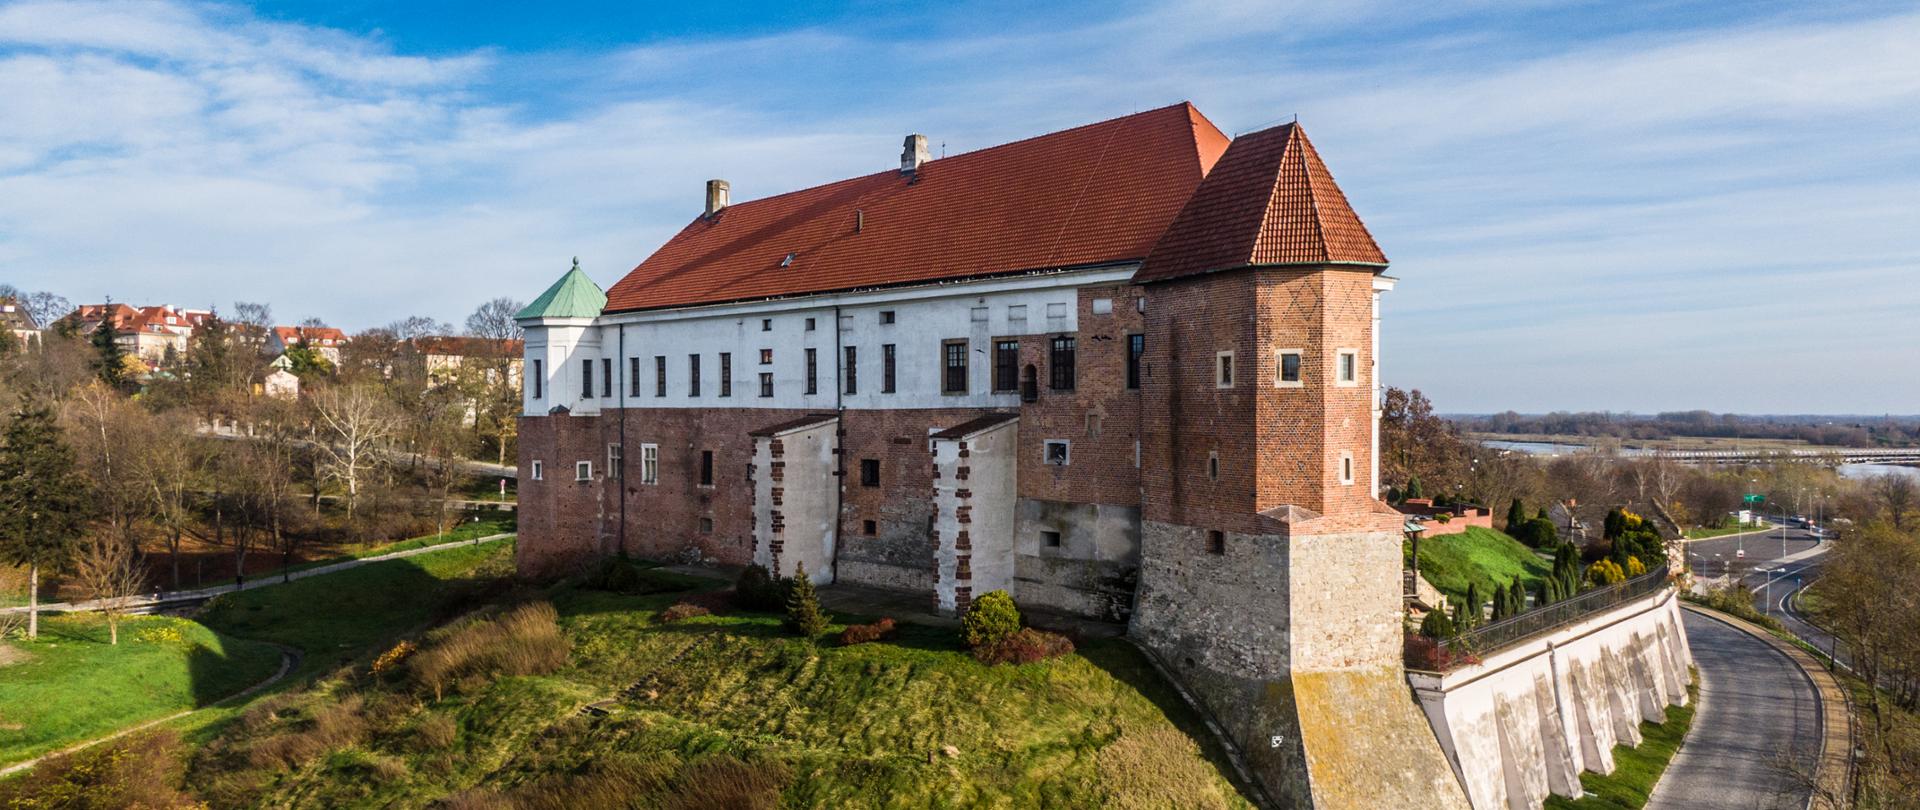 Zamek Królewski w Sandomierzu, fot. Tomasz Chmiel